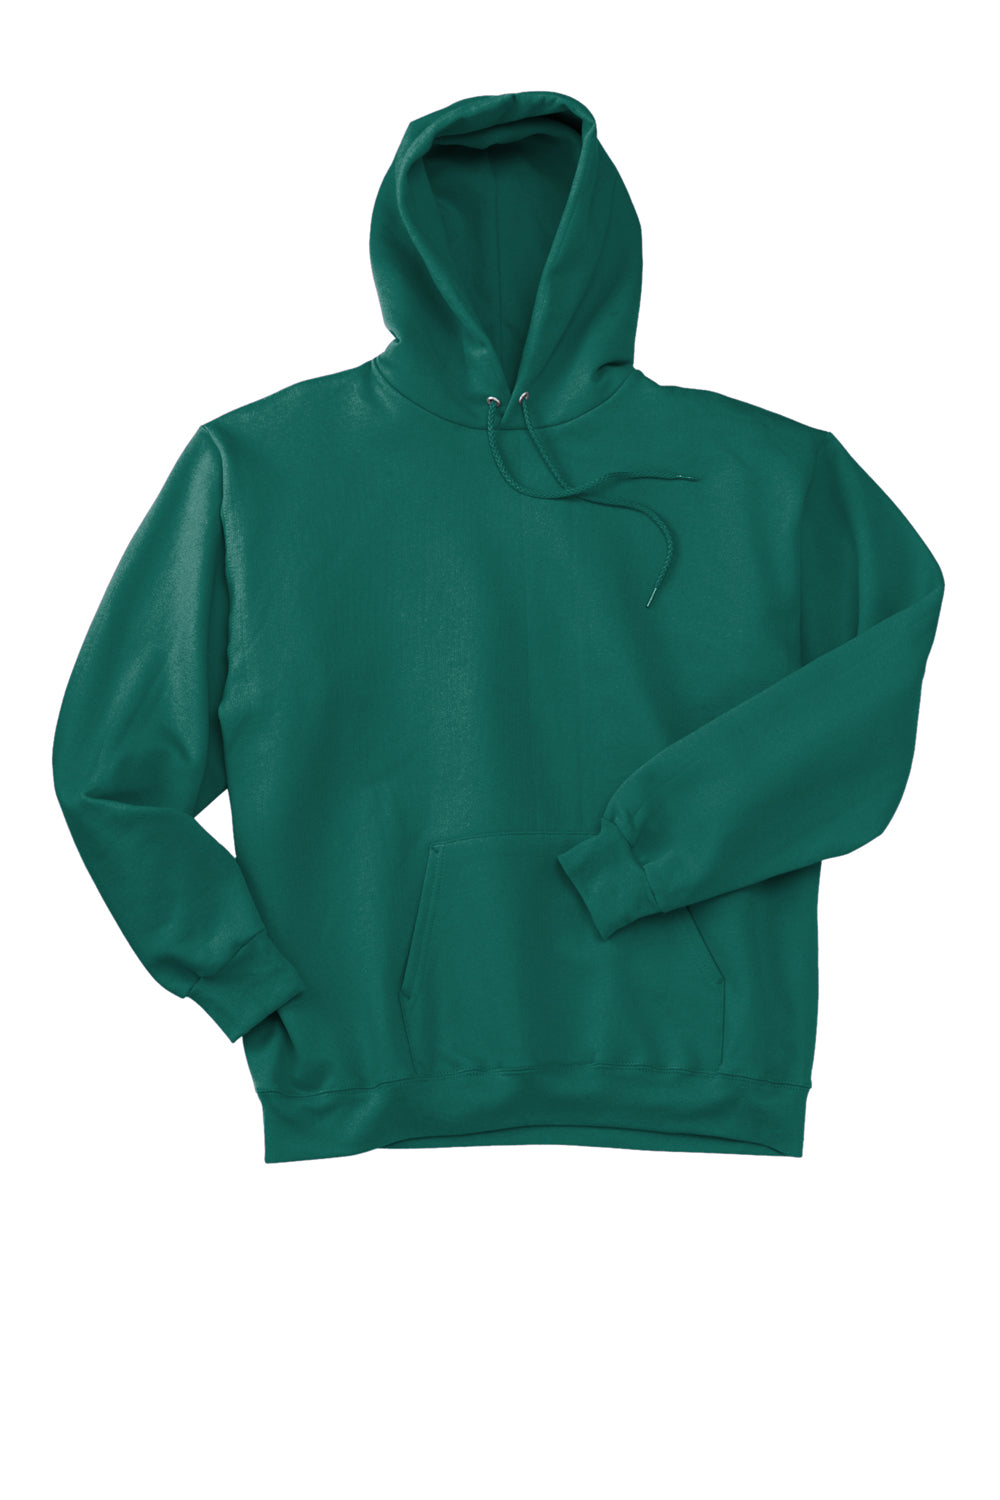 Hanes Mens Ultimate Cotton PrintPro XP Hooded Sweatshirt Hoodie Cactus Green Flat Front